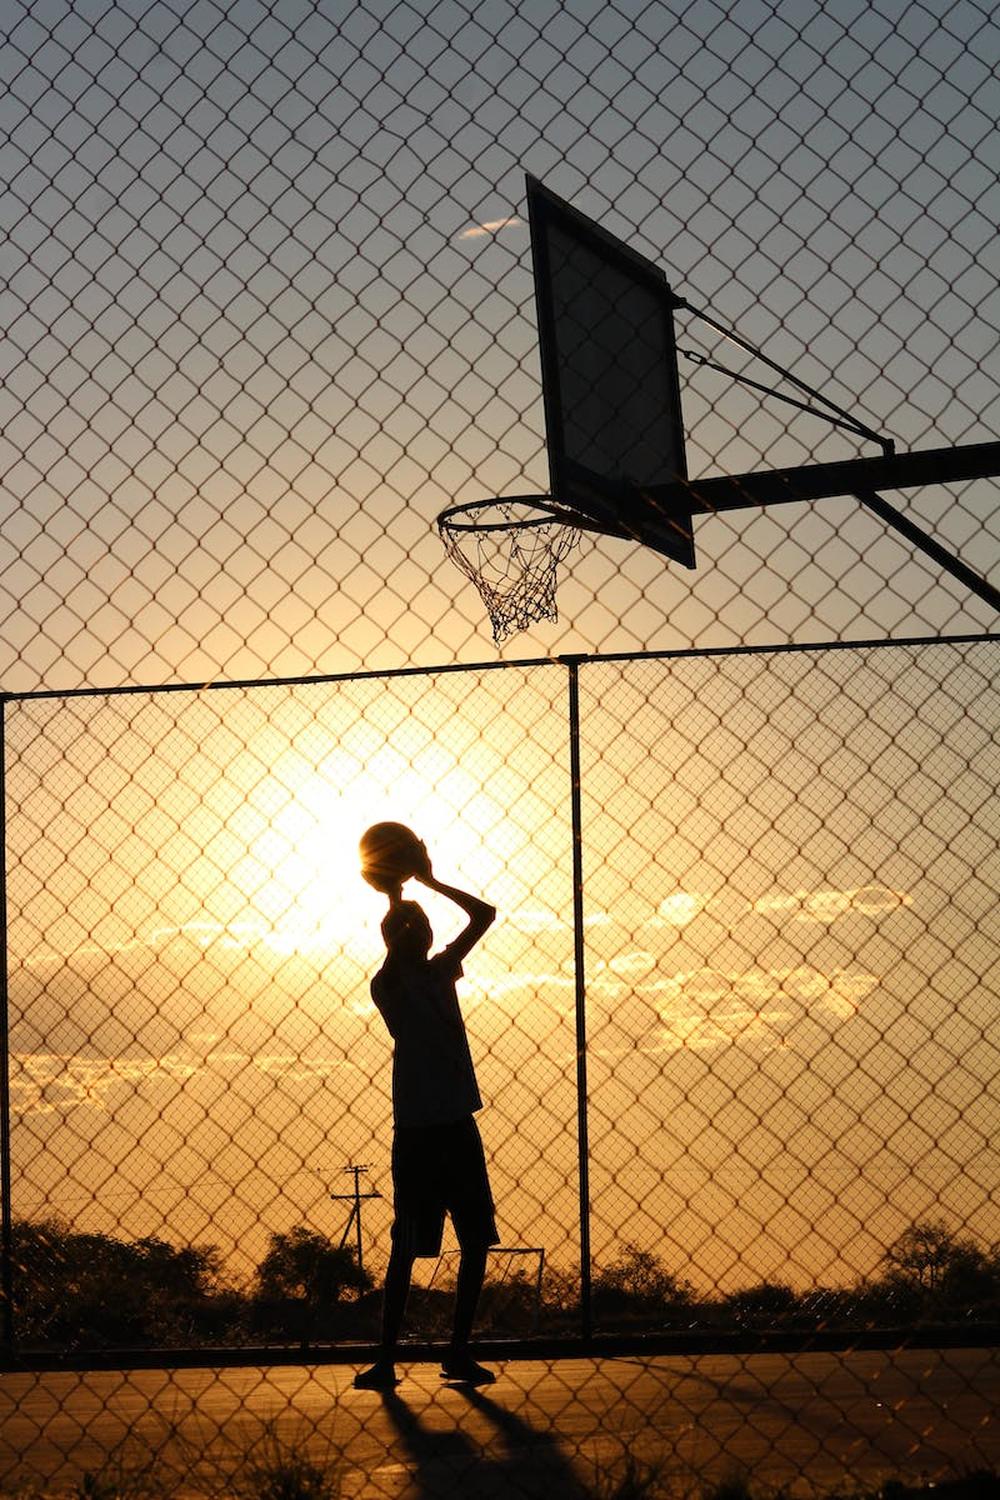 basketball_player_throwing_ball_into_basketball_ho